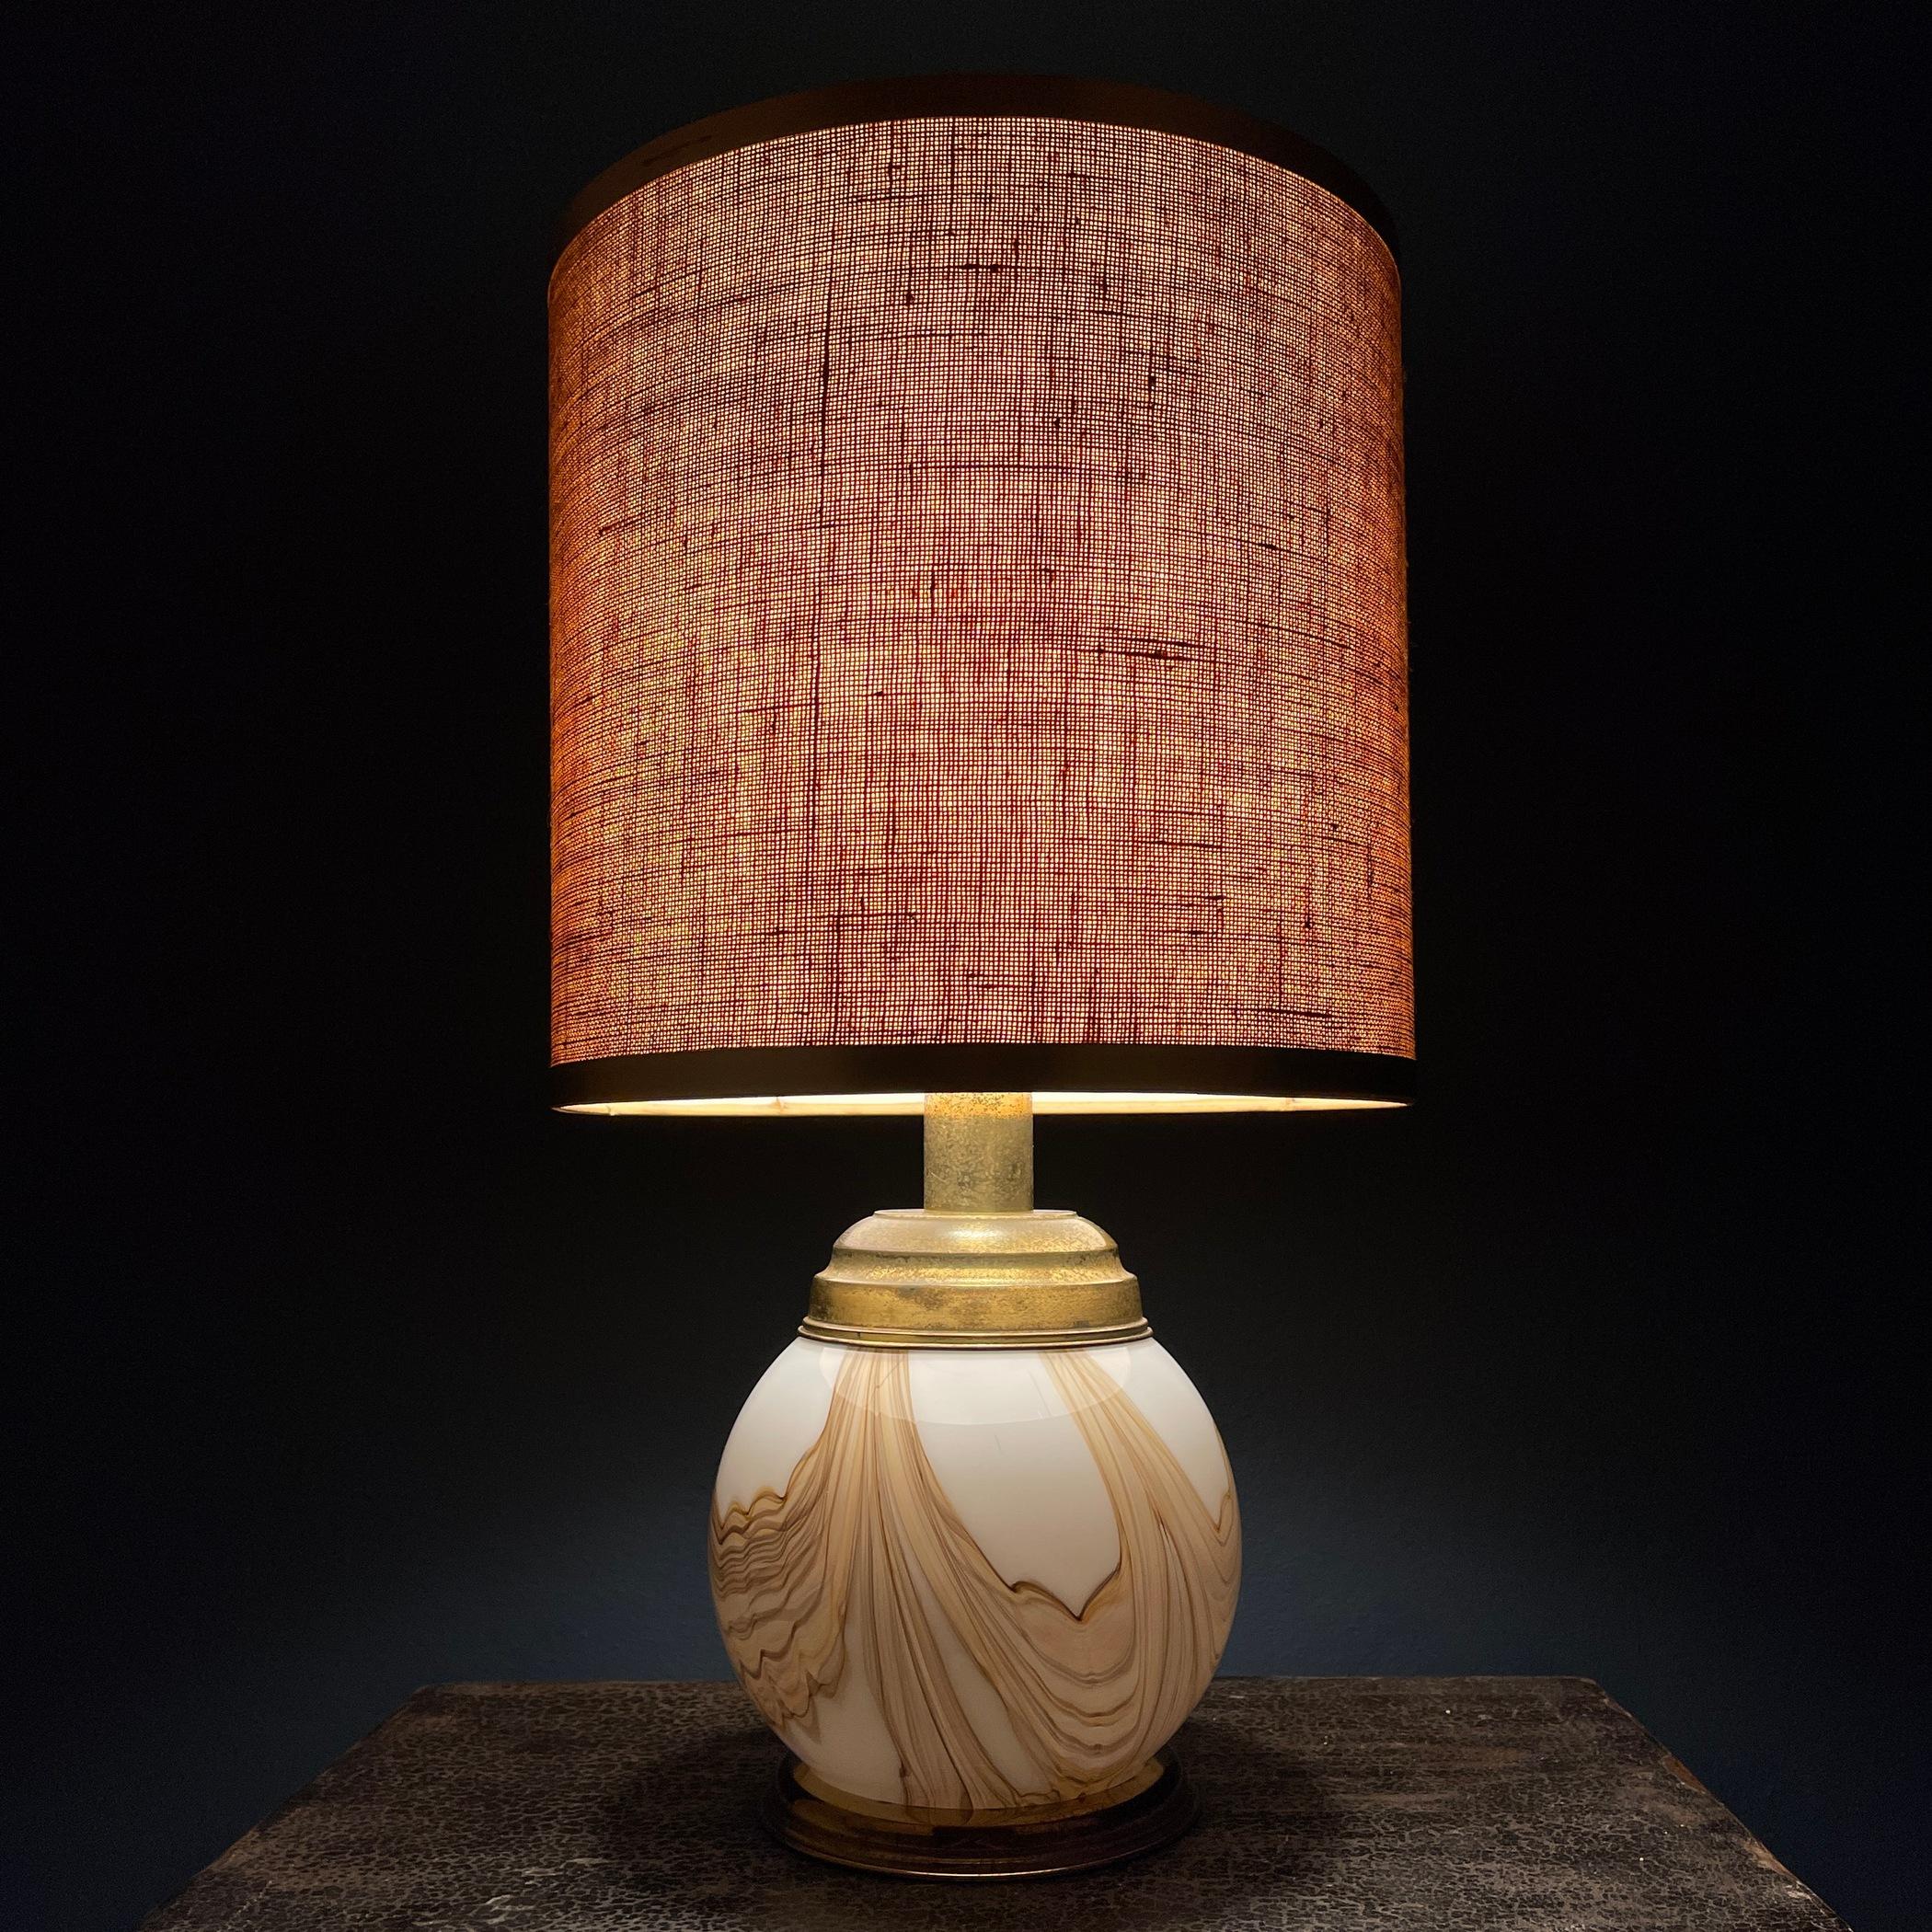 Wir präsentieren die klassische Murano-Lampe, ein Meisterwerk, das in den glanzvollen 1970er Jahren in Italien hergestellt wurde. Dieses exquisite Stück besticht durch sein faszinierendes Glasdesign, ein Zeugnis der Kunstfertigkeit der Glasmacher